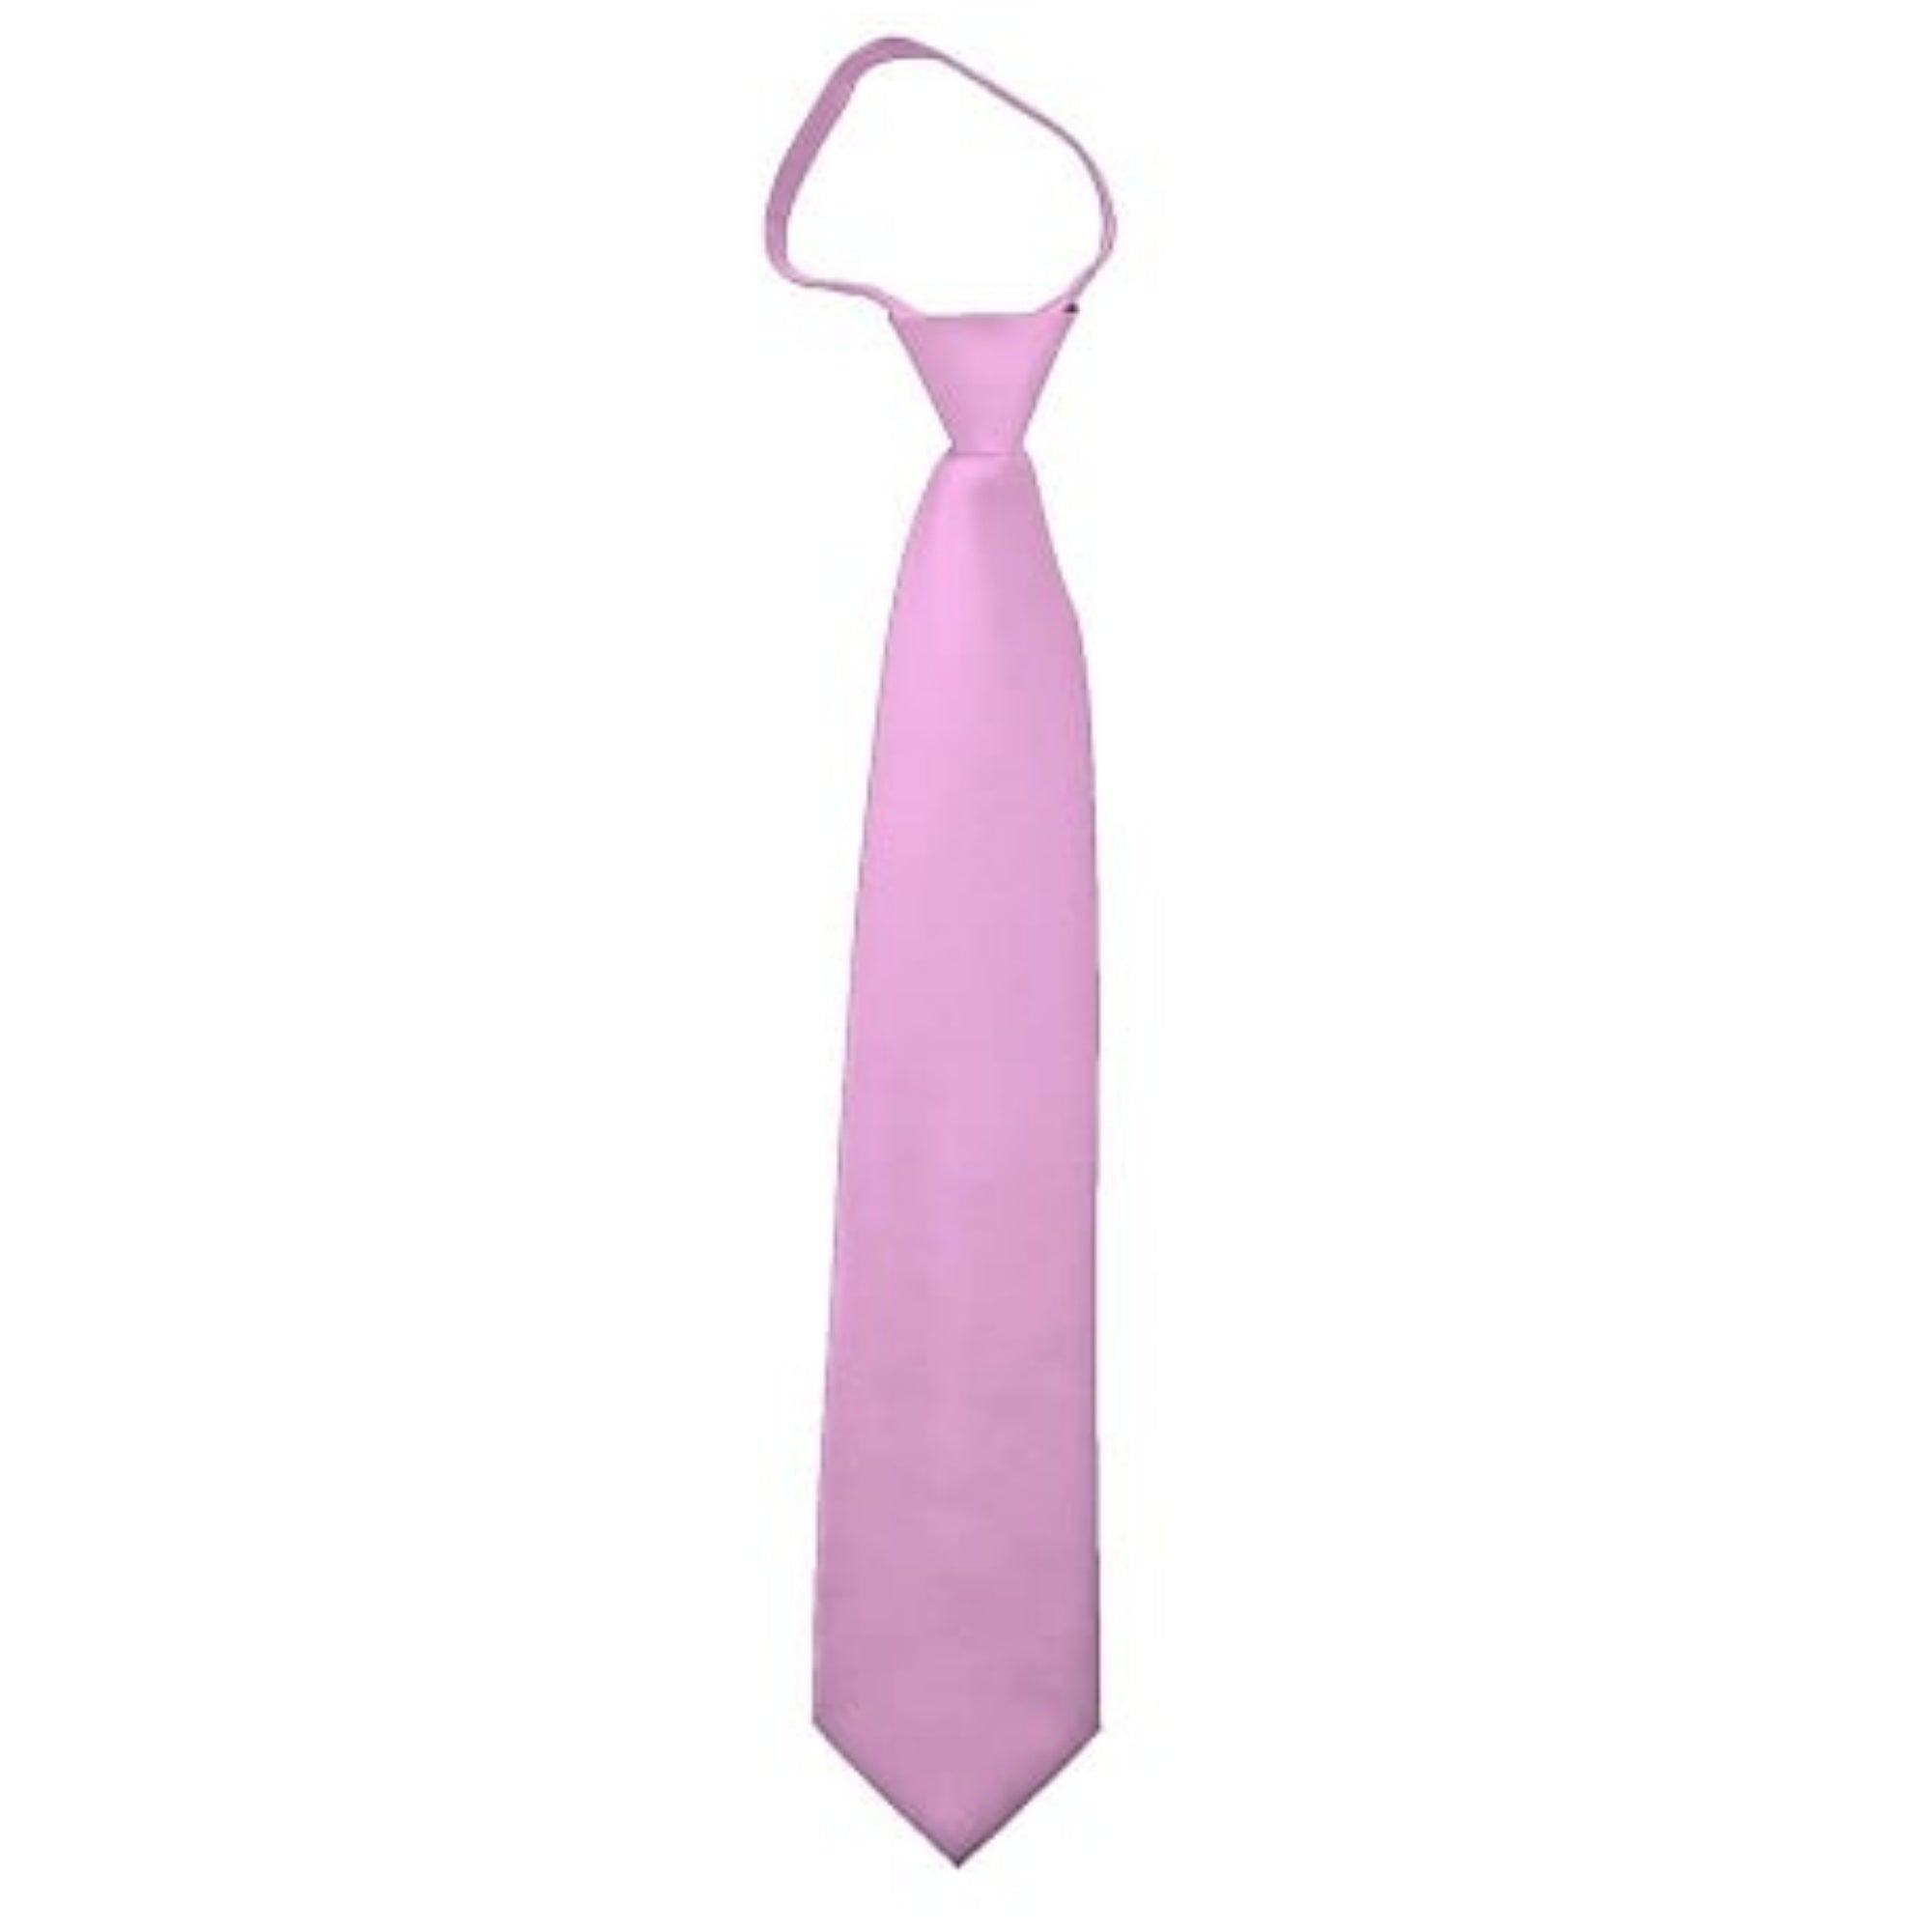 TheDapperTie Men's Solid Color Zipper Neckties 17 Inch Or 20 Inch Dapper Neckwear TheDapperTie Pink 3 Inch W x 17 Inch L 